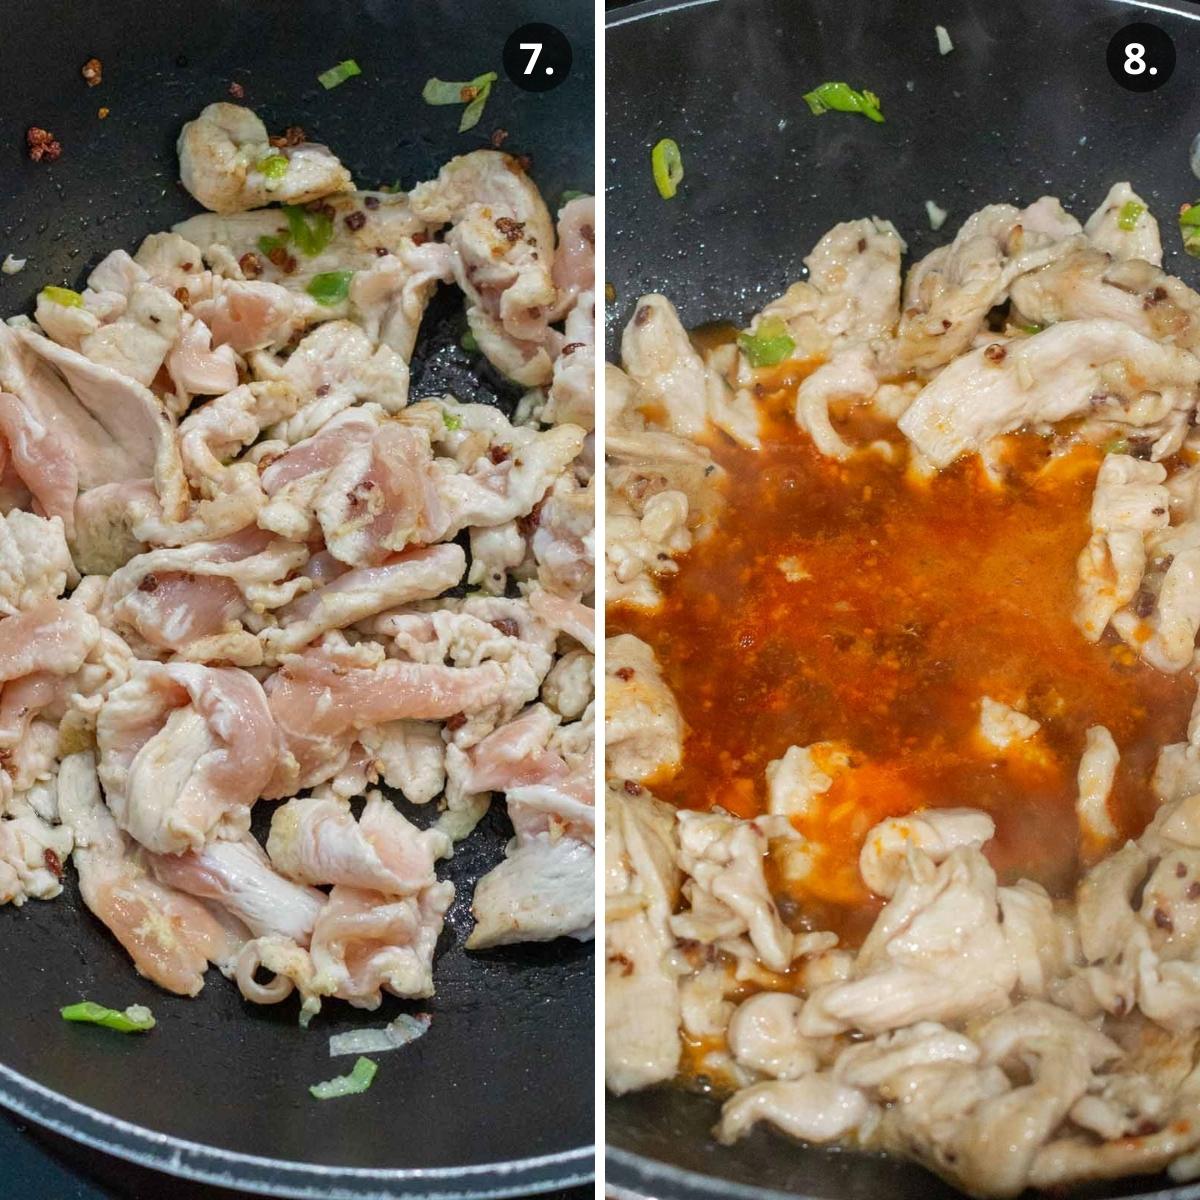 Stir frying chicken and adding mandarin orange sauce to the pan.